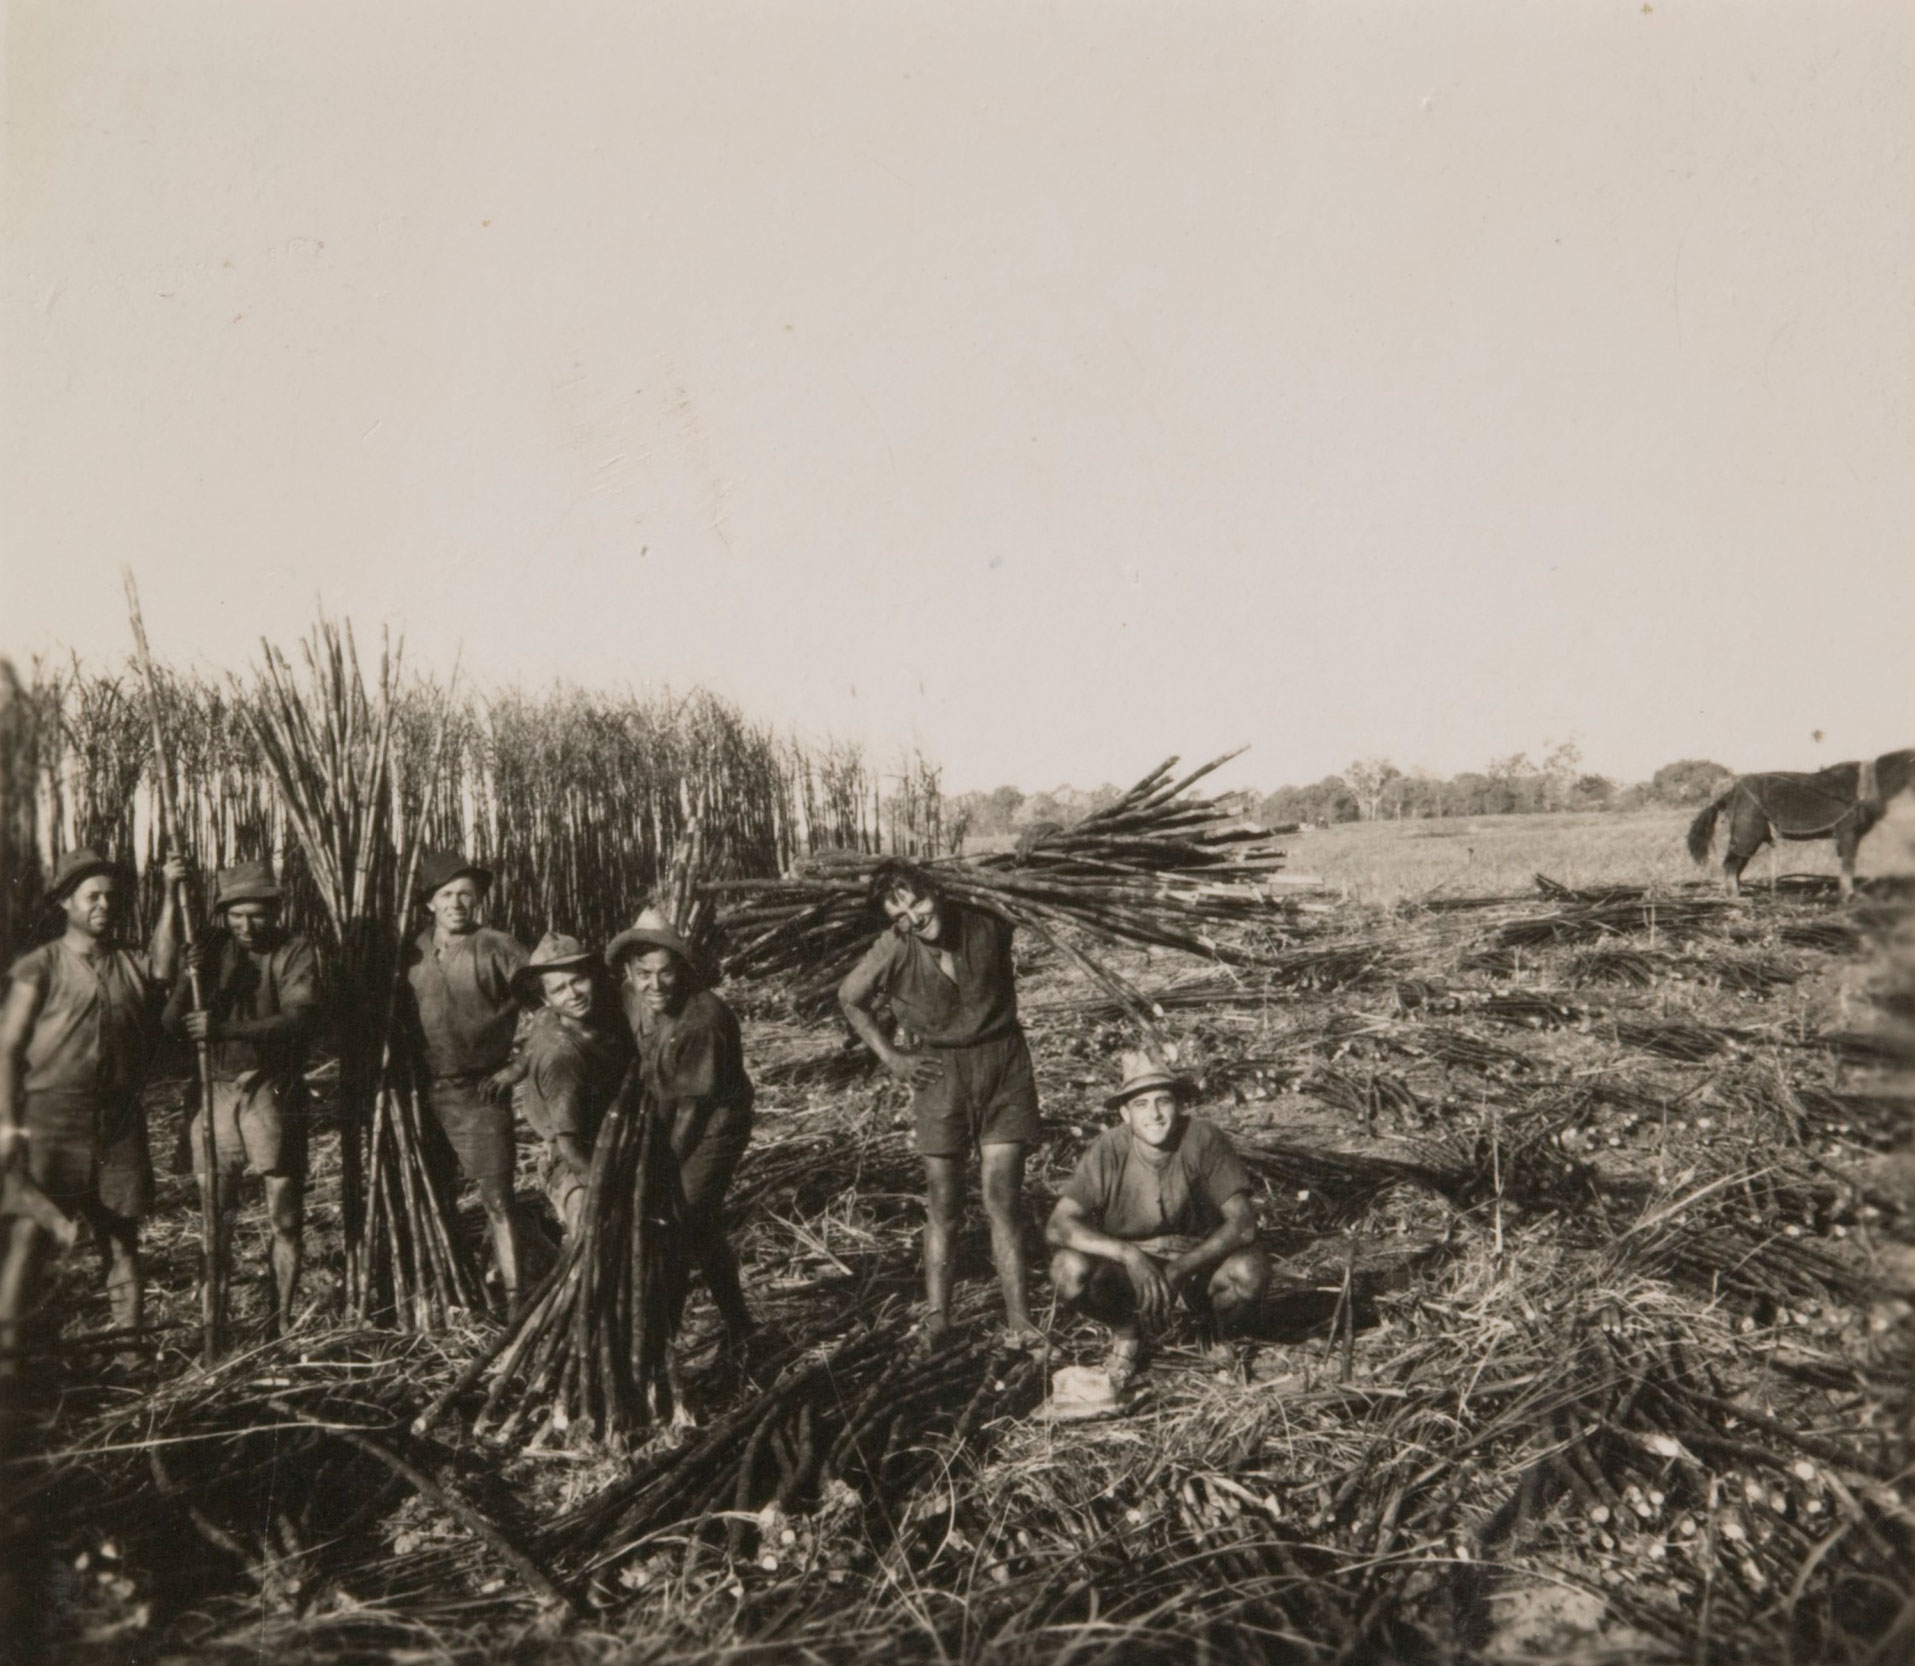 Cane cutters in a sugar cane field.